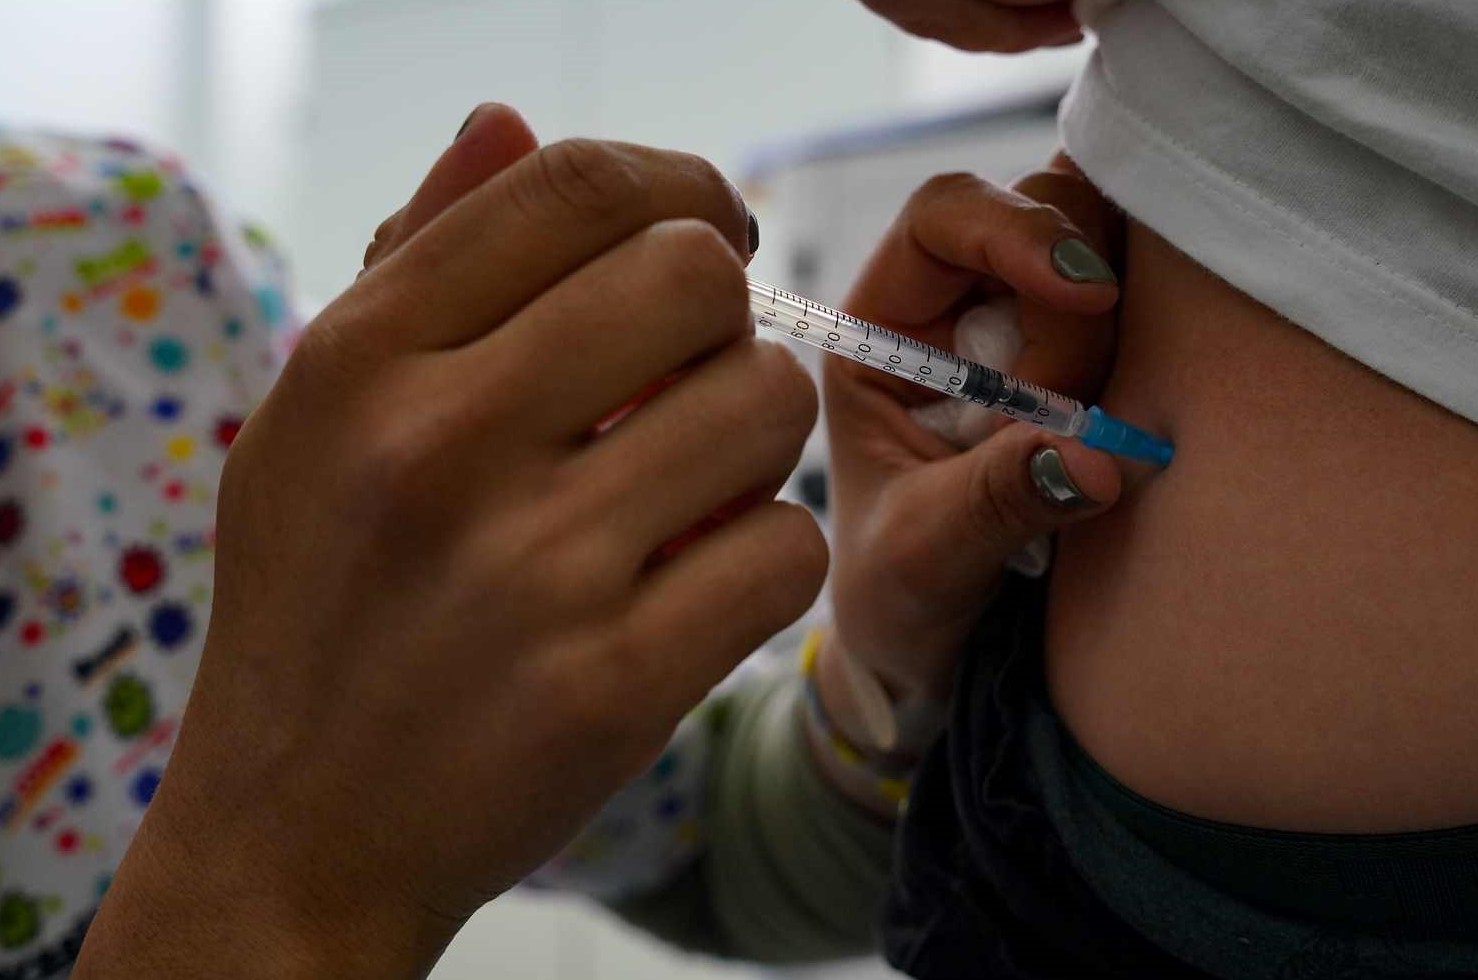 Secretaria da Saúde orienta ampliação da vacina contra a gripe para crianças até 12 anos em Santa Catarina